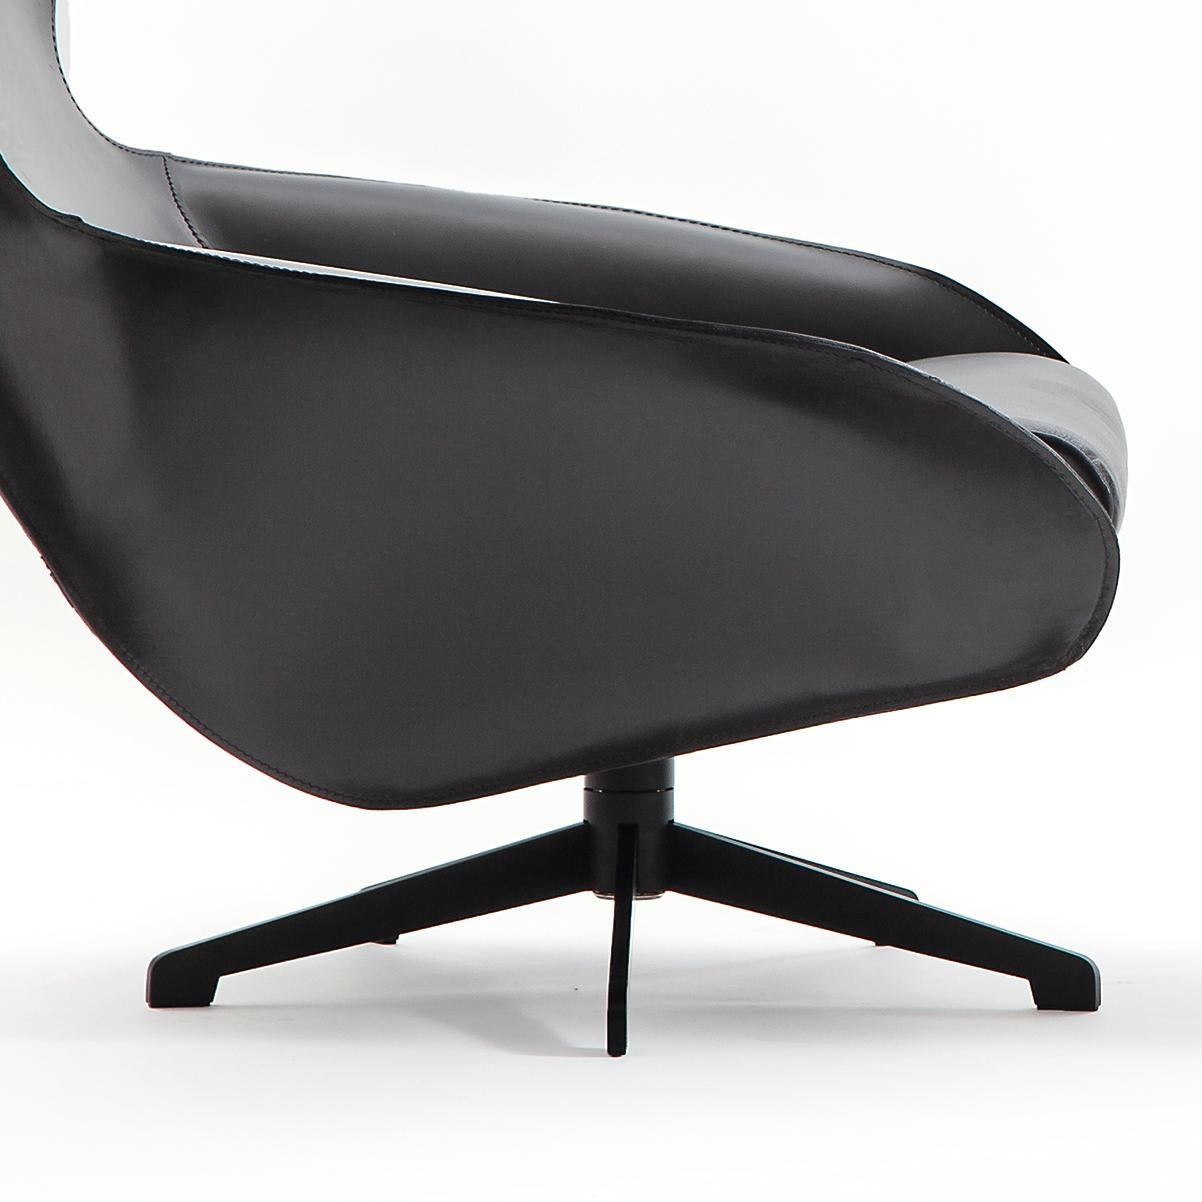 Chaise longue conçue par Mario Bellini en 2015. Fabriqué par Cassina en Italie.

Spacieux et accueillant, le cab lounge est une réaffirmation du concept de la chaise de cabine. Véritable chef-d'œuvre de l'artisanat, le fauteuil Cab Lounge est